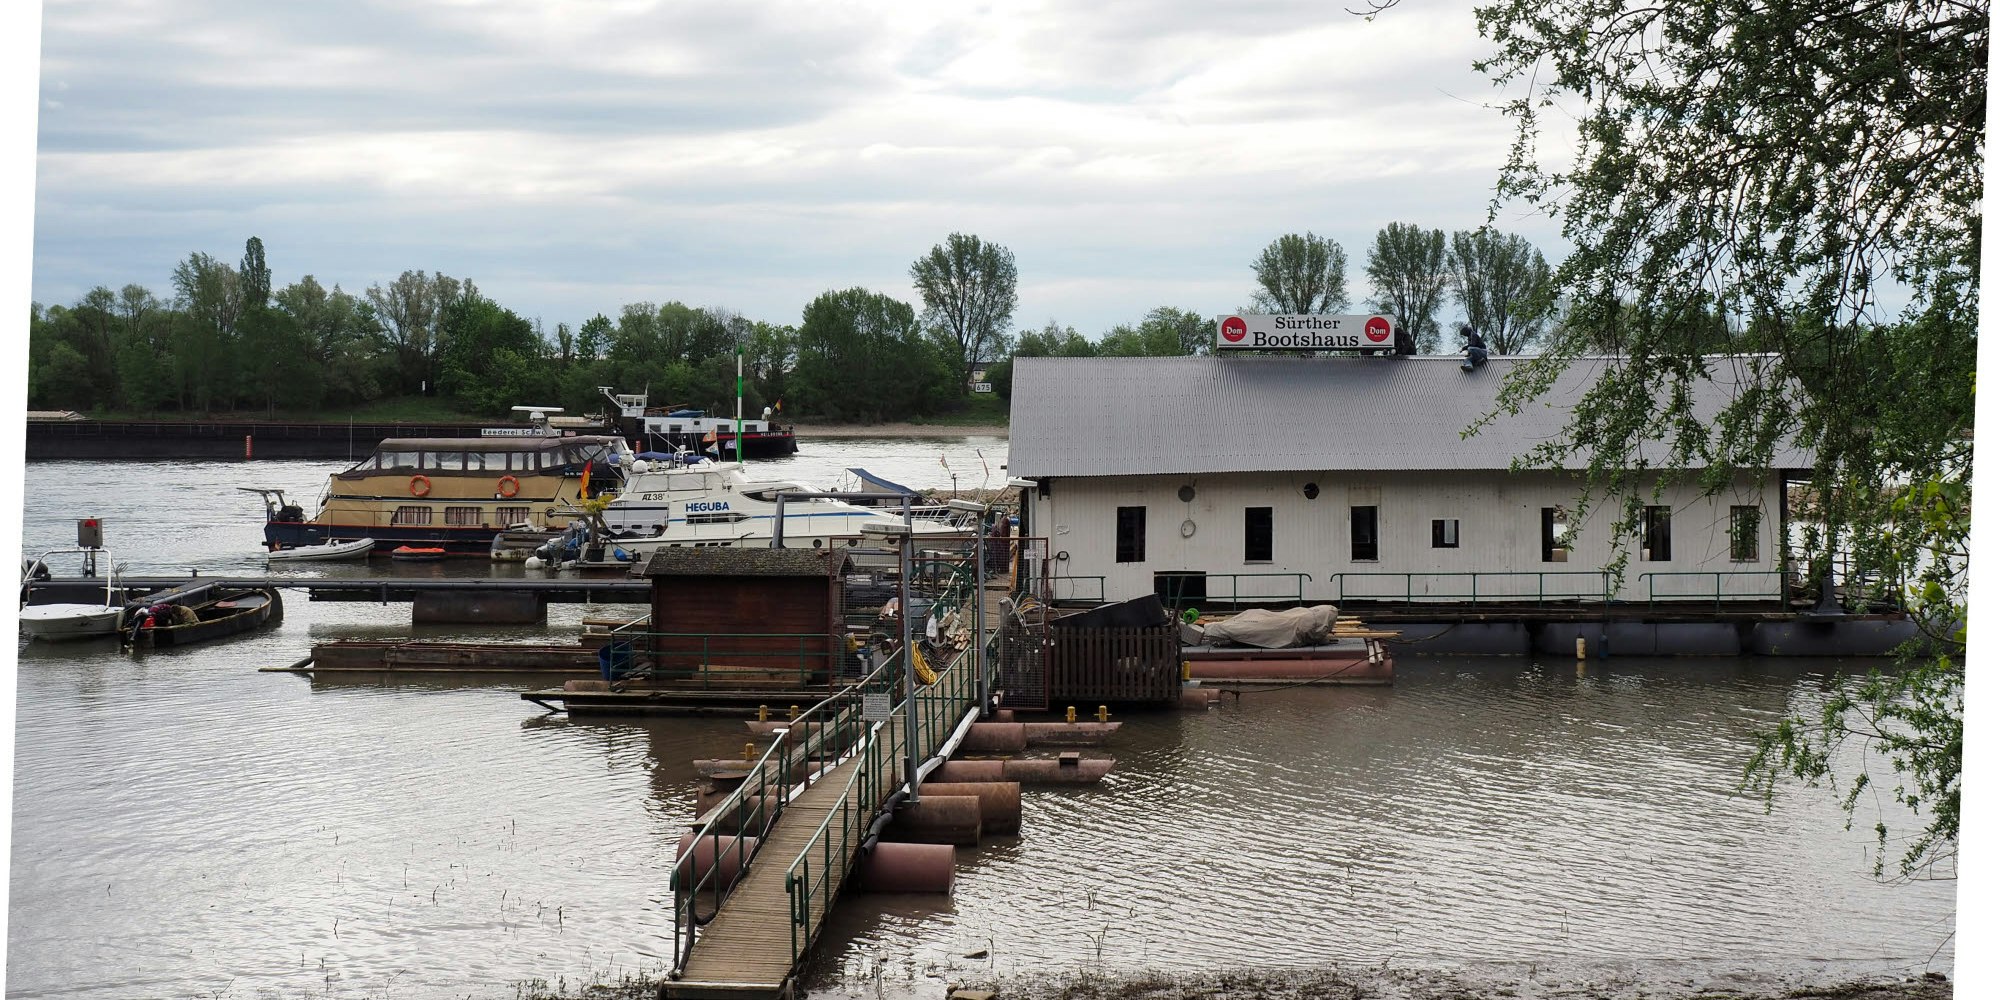 Das Sürther Bootshaus befindet sich derzeit im Umbau.